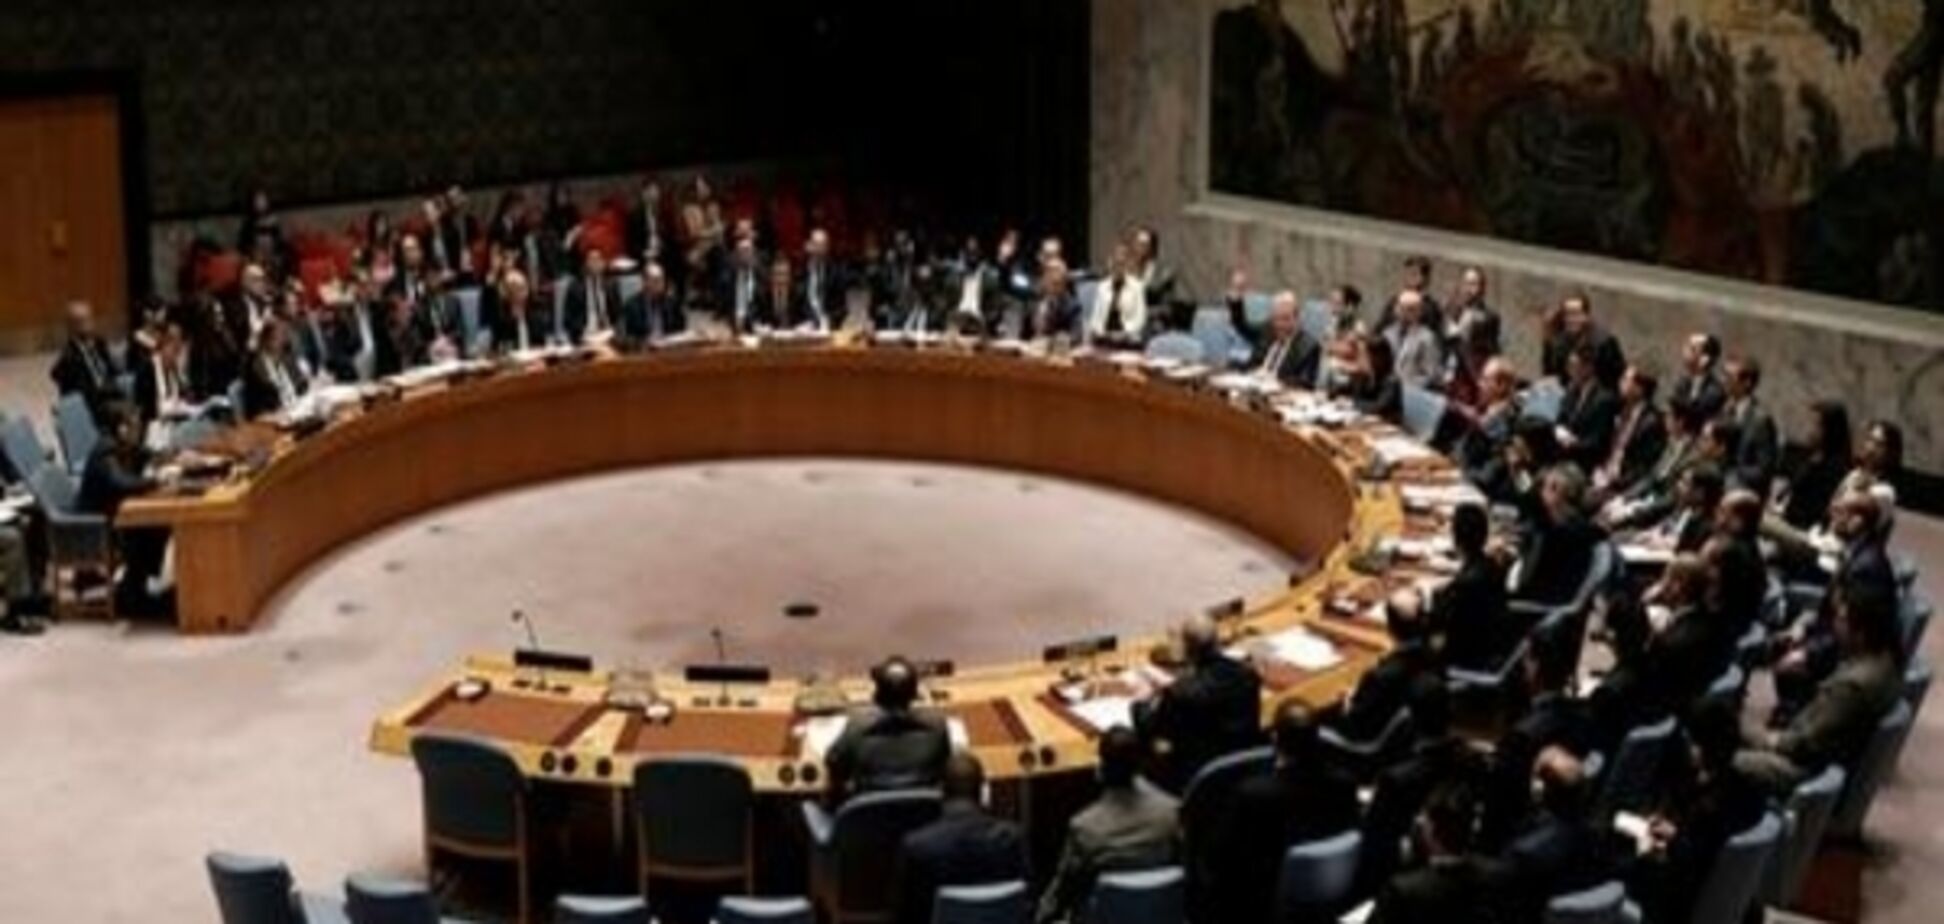 Четверта спроба: Захід представив новий проект резолюції щодо Сирії